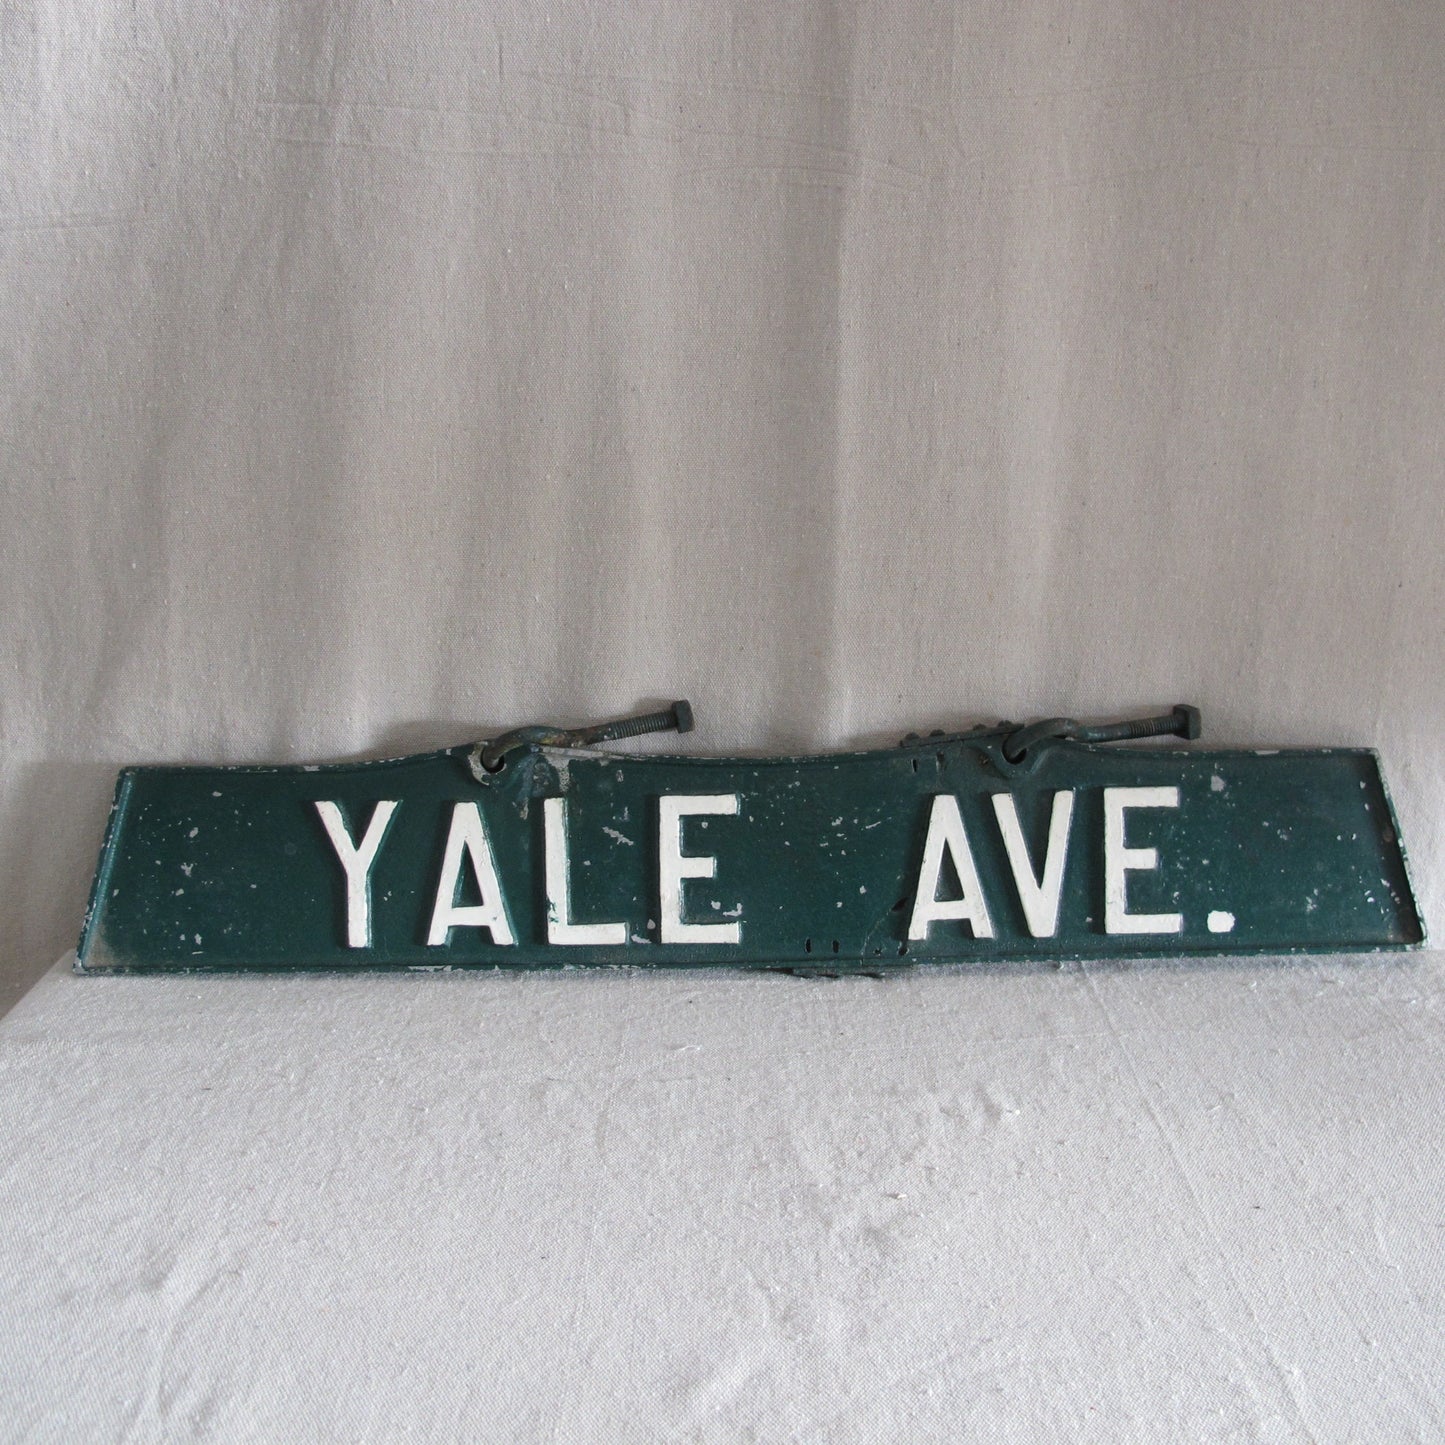 Yale Avenue Street Sign, Cast Zinc, c. 1940, period repair